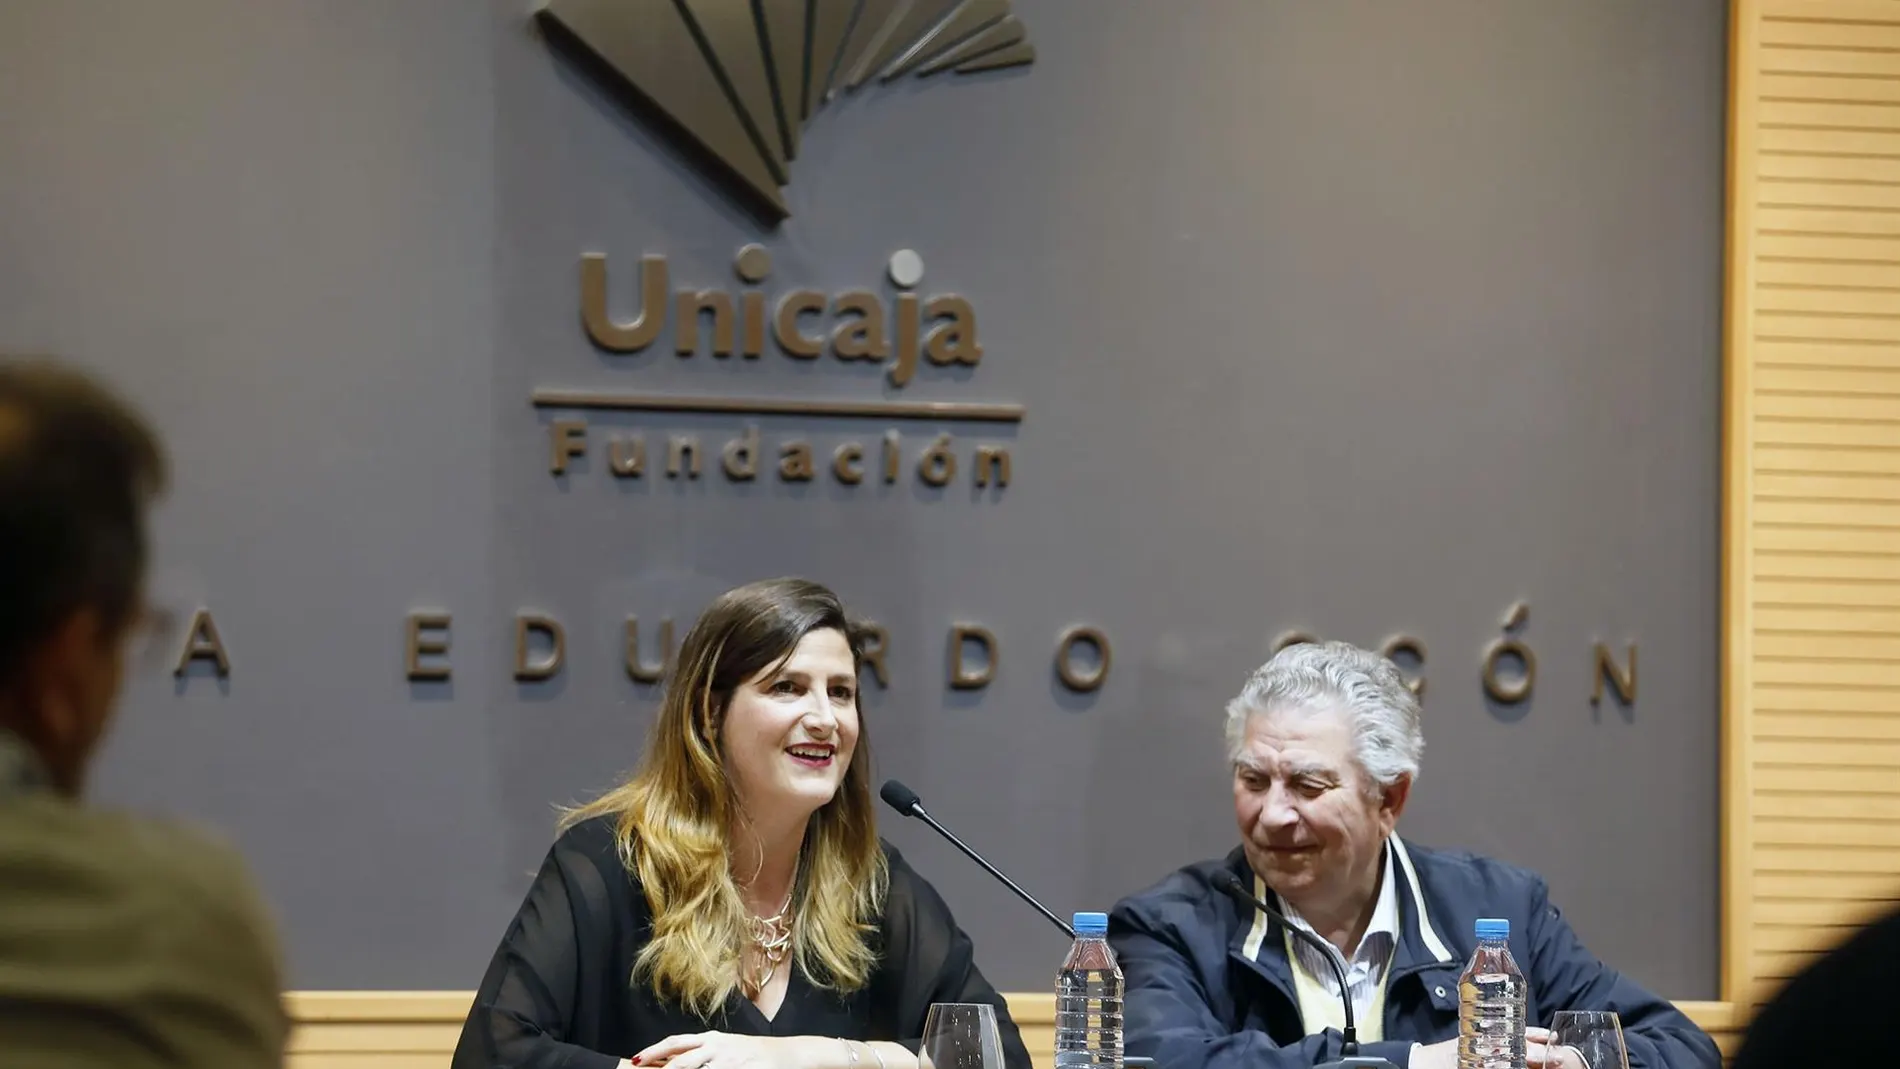 Ana Cabrera (Unicaja) y Salvador Guerrero (Thales) presentaron ayer la edición / Foto: La Razón